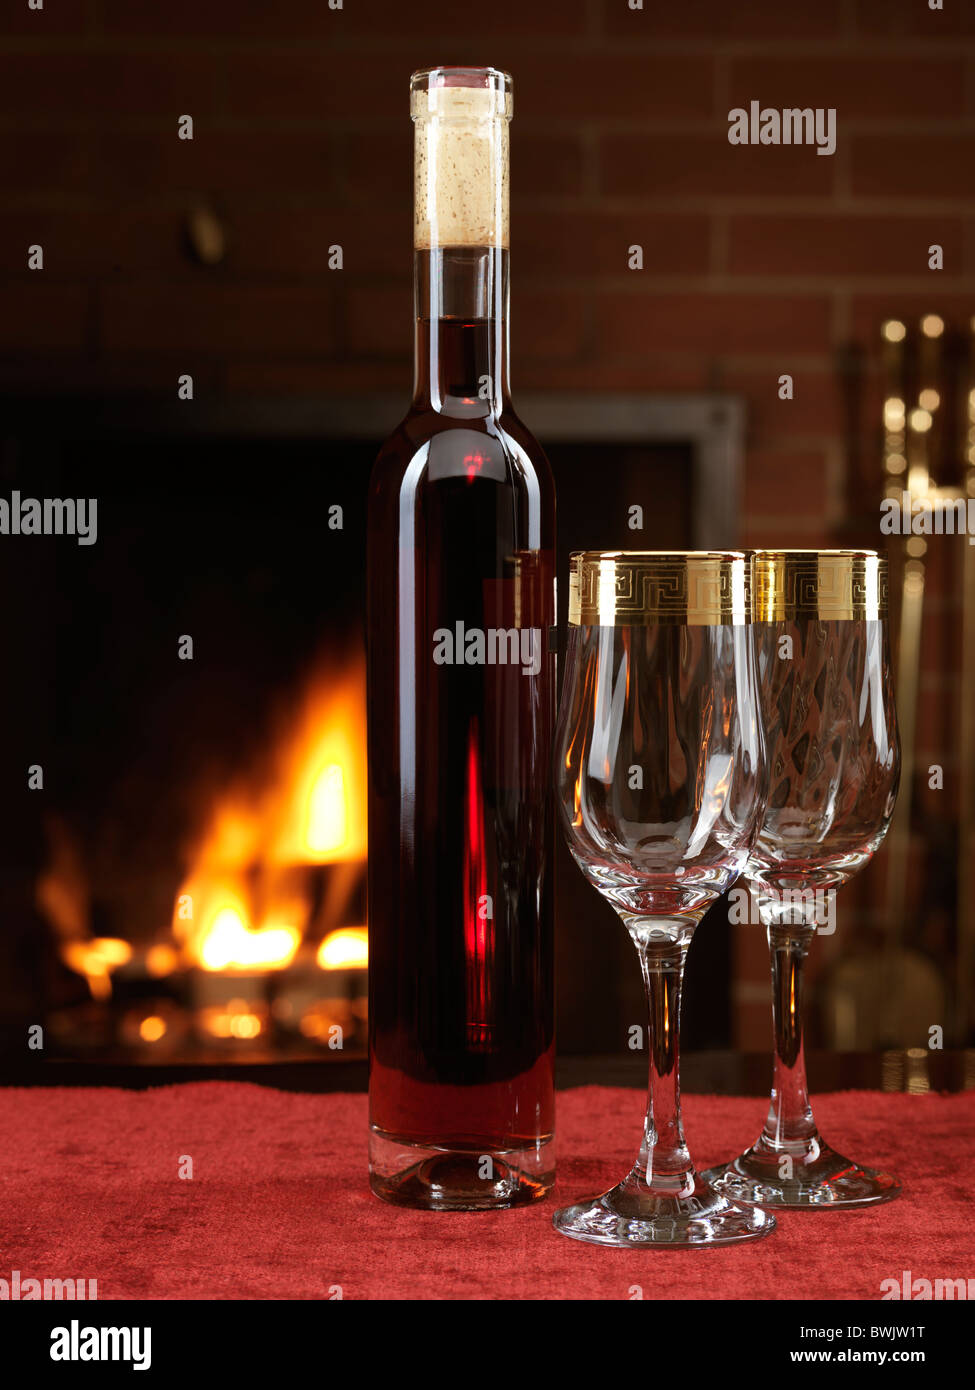 Botella de vino seco de color rojo y dos copas de vino en una tabla con una chimenea en el fondo Foto de stock